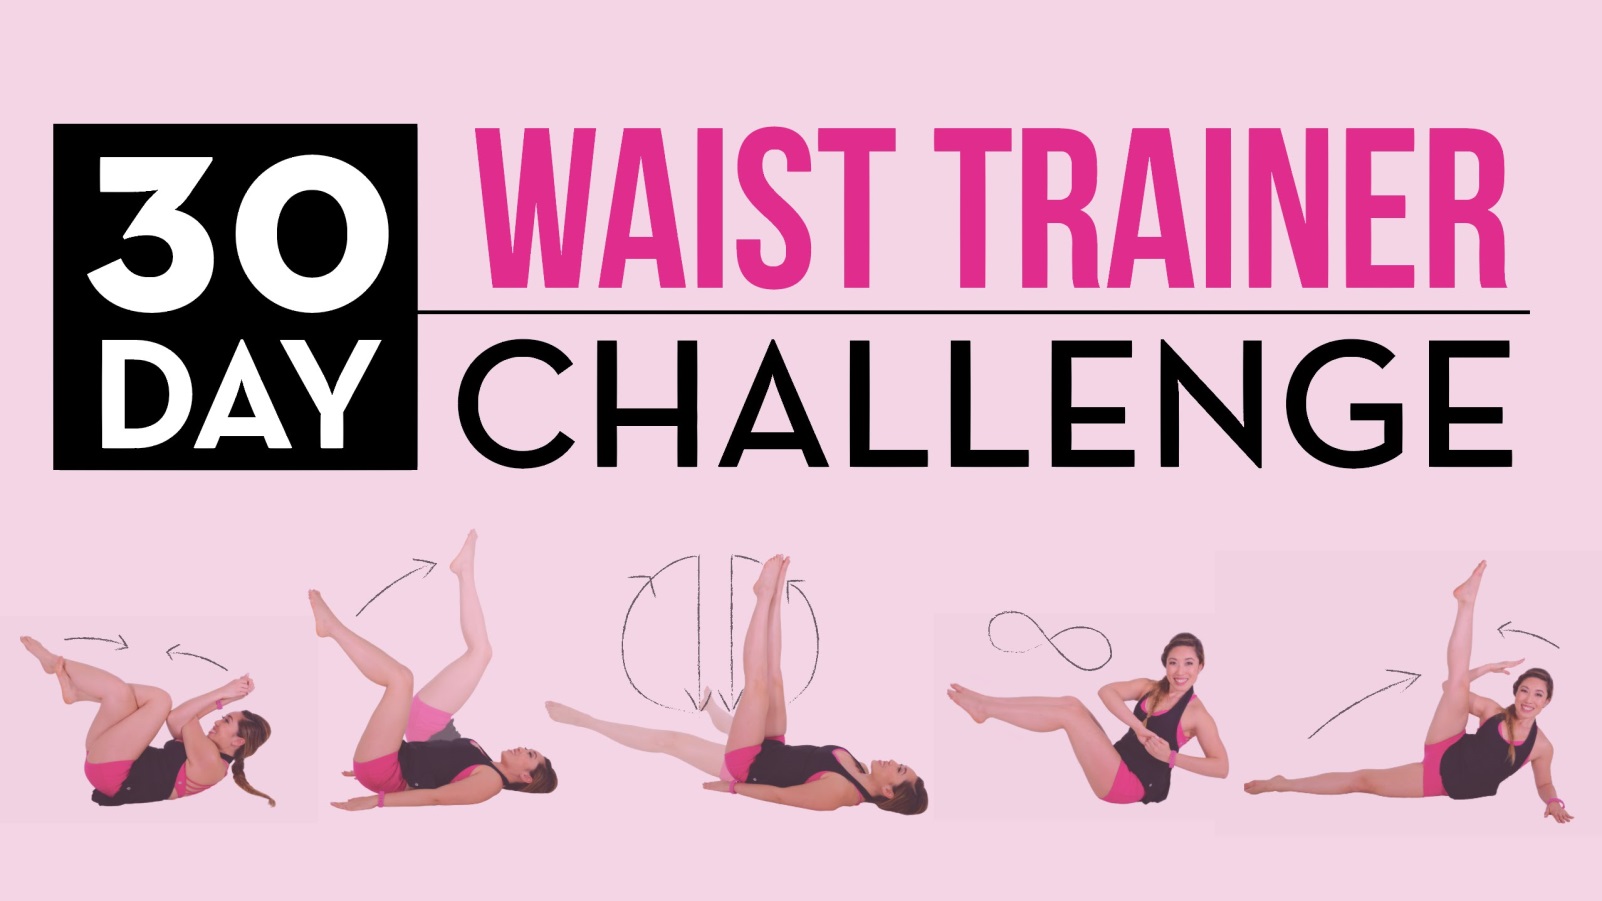 20170306_Waist_trainer_challenge